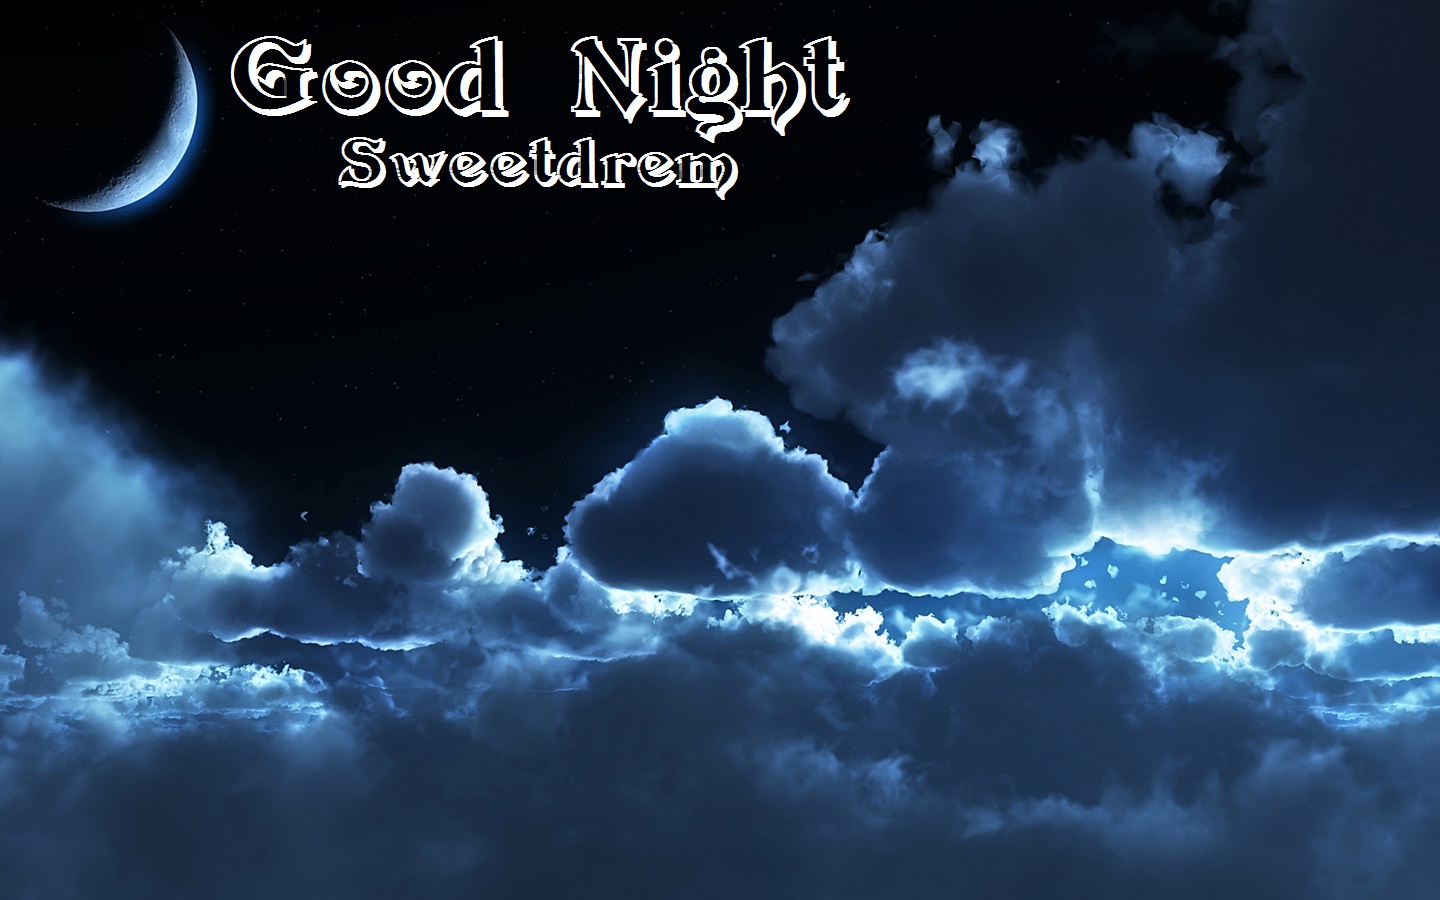 🔥 Free Download Good Night Good Night Good Night Wallpaper Hd